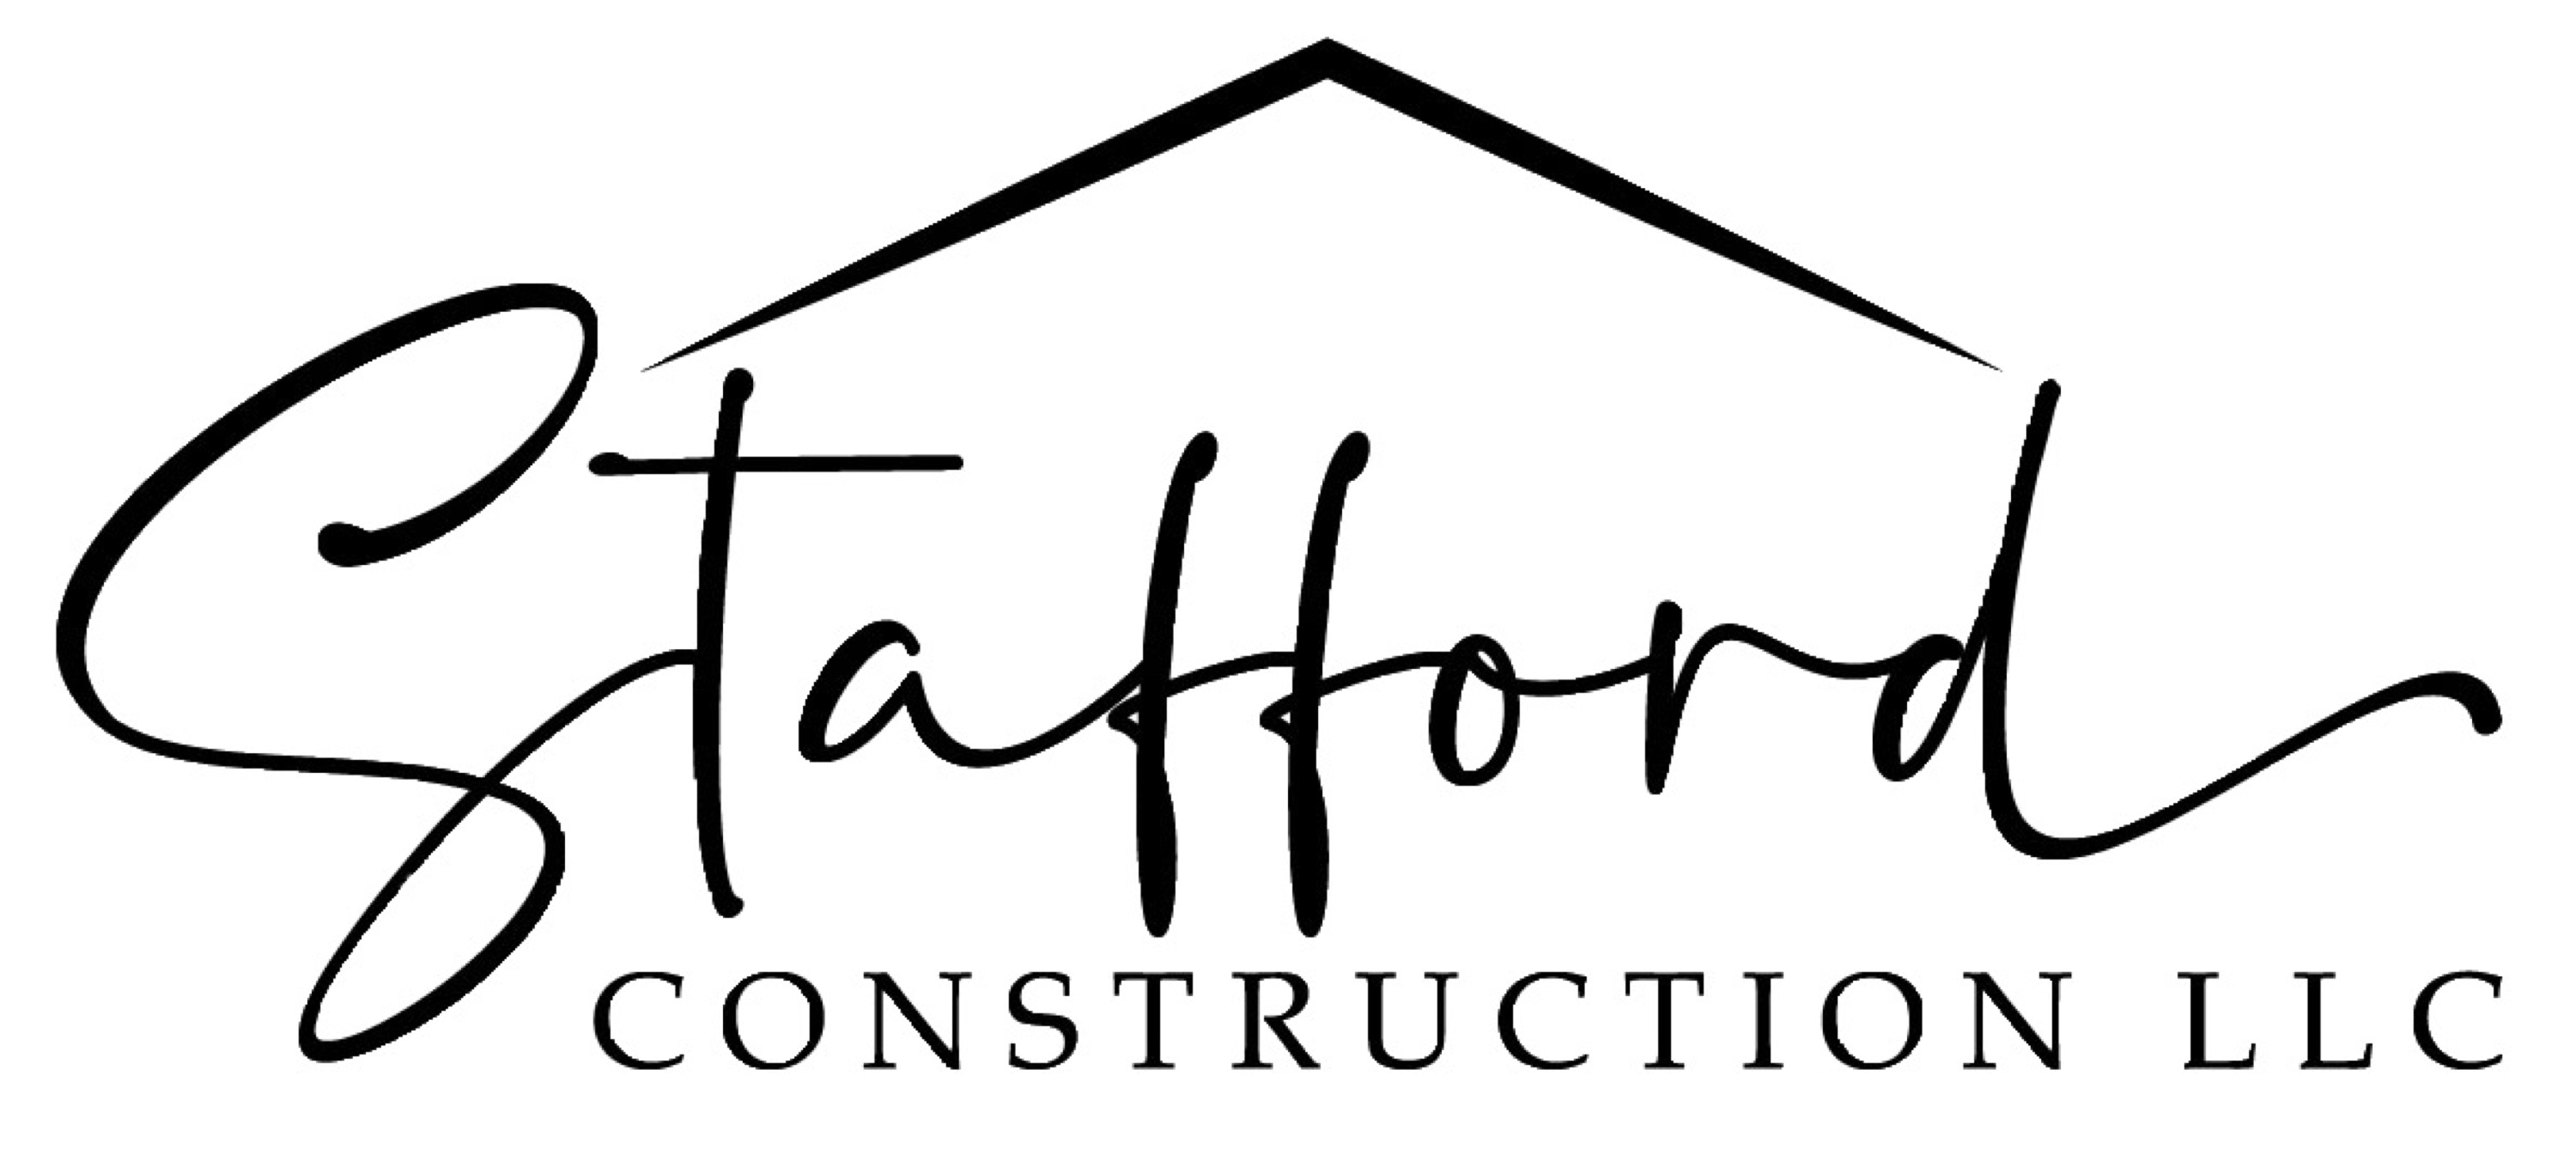 Stafford Construction LLC Logo